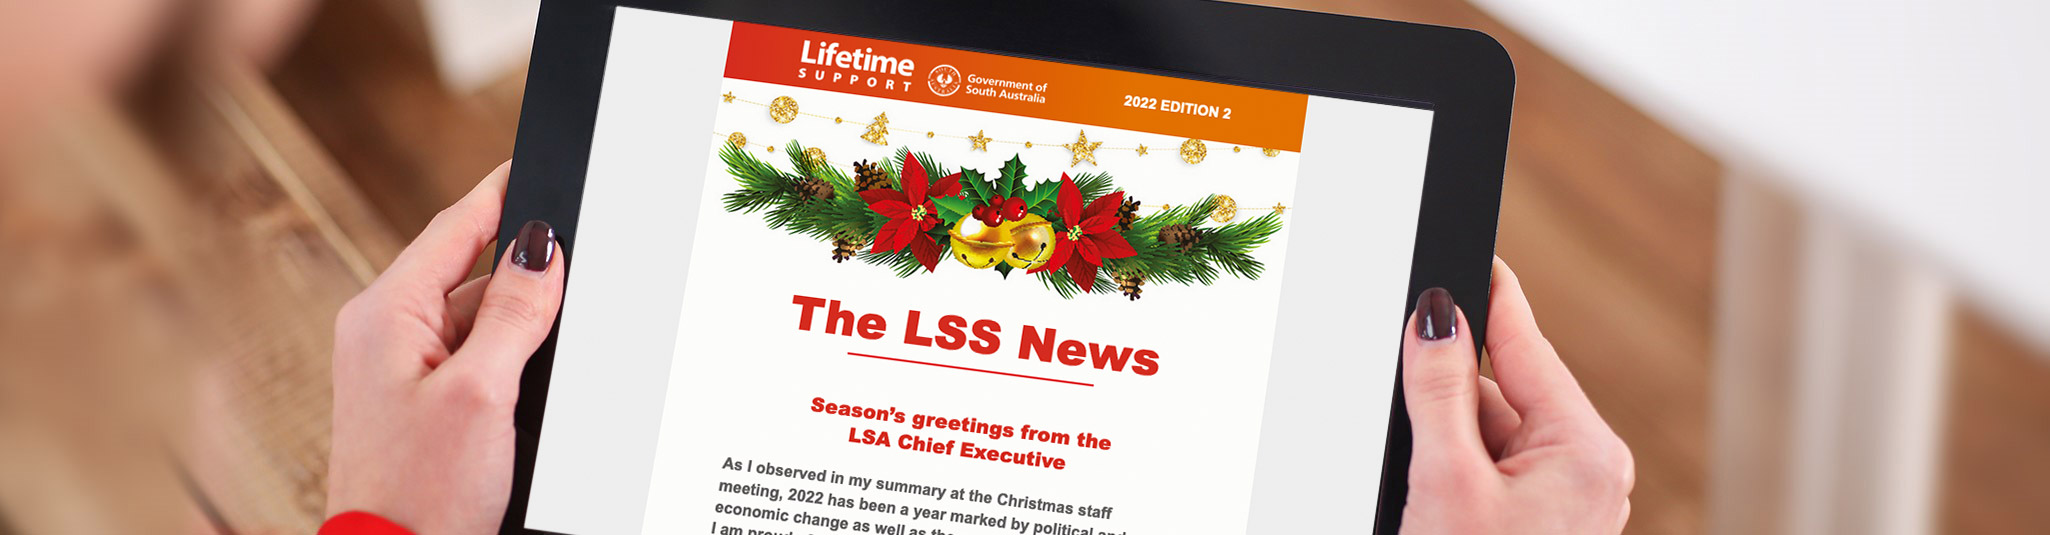 LSS News